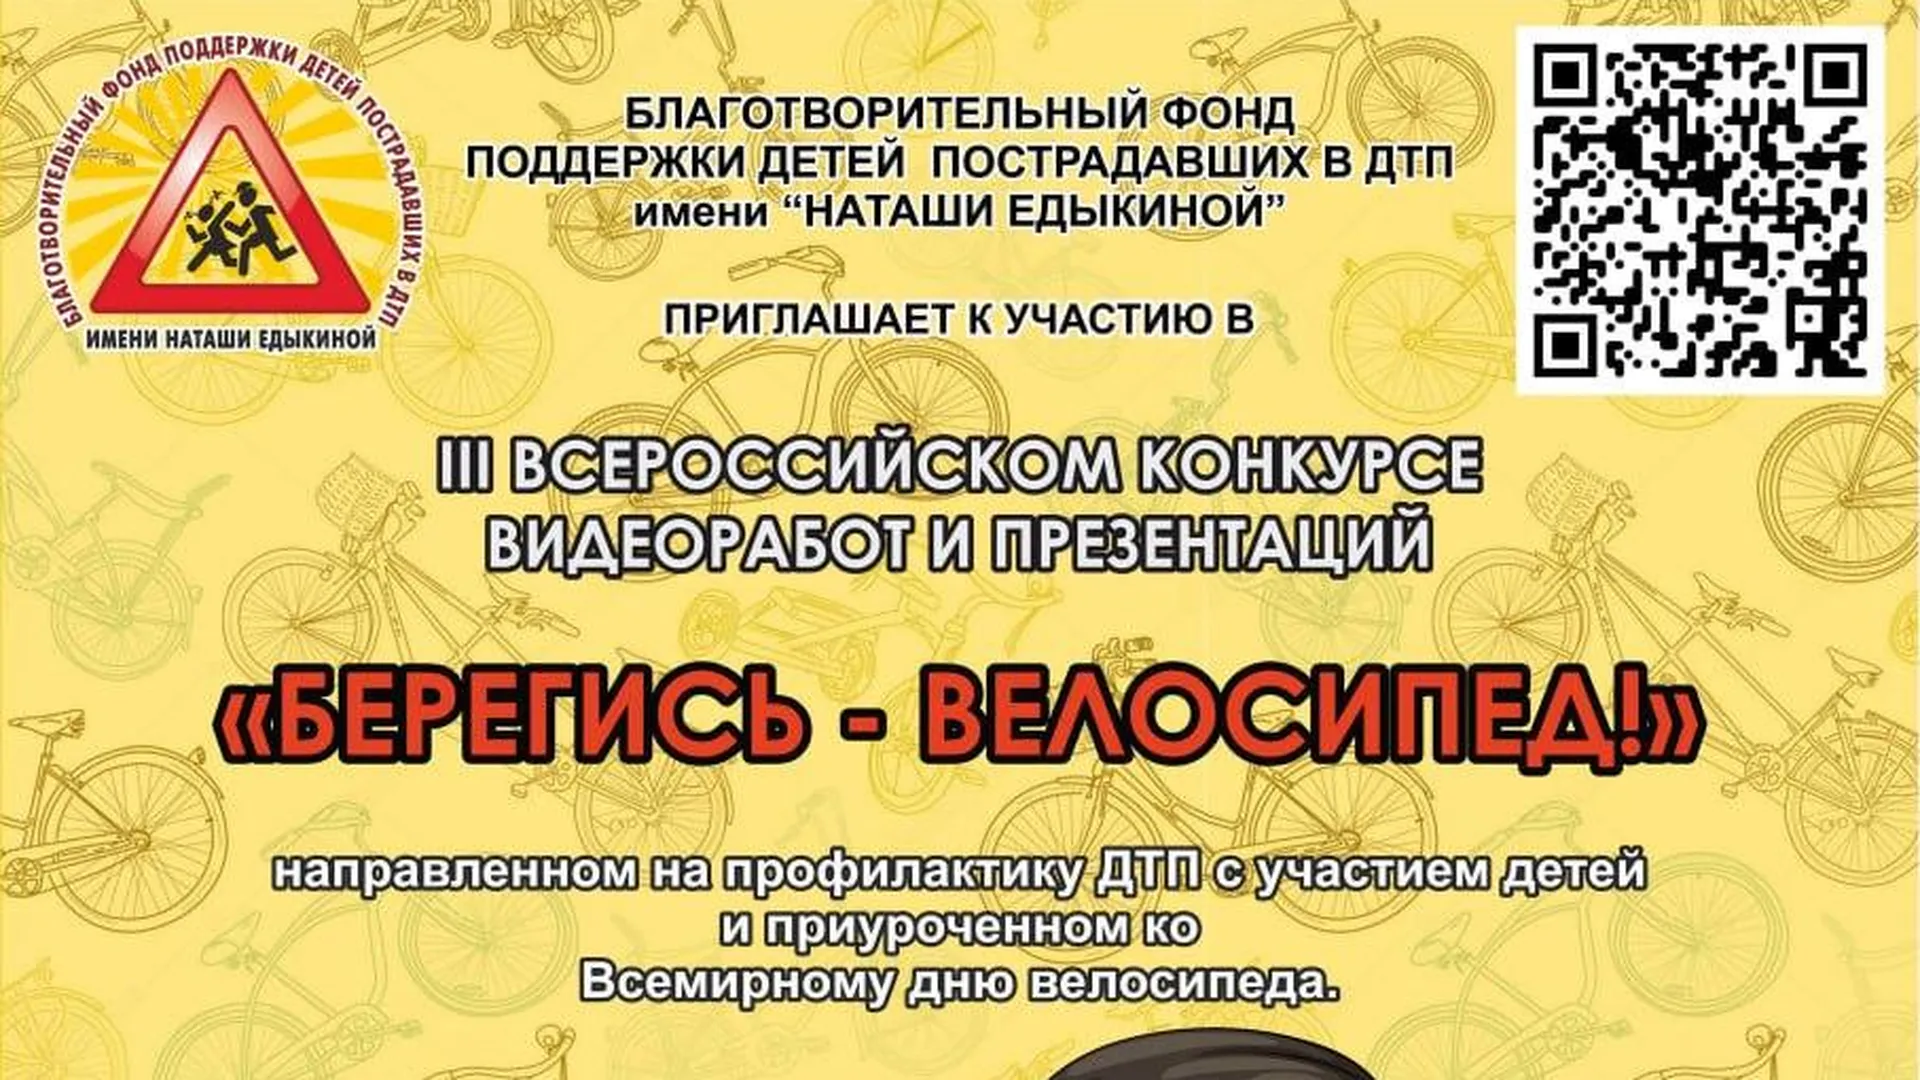 Дети Подмосковья могут принять участие в конкурсе по ПДД «Берегись — велосипед!»